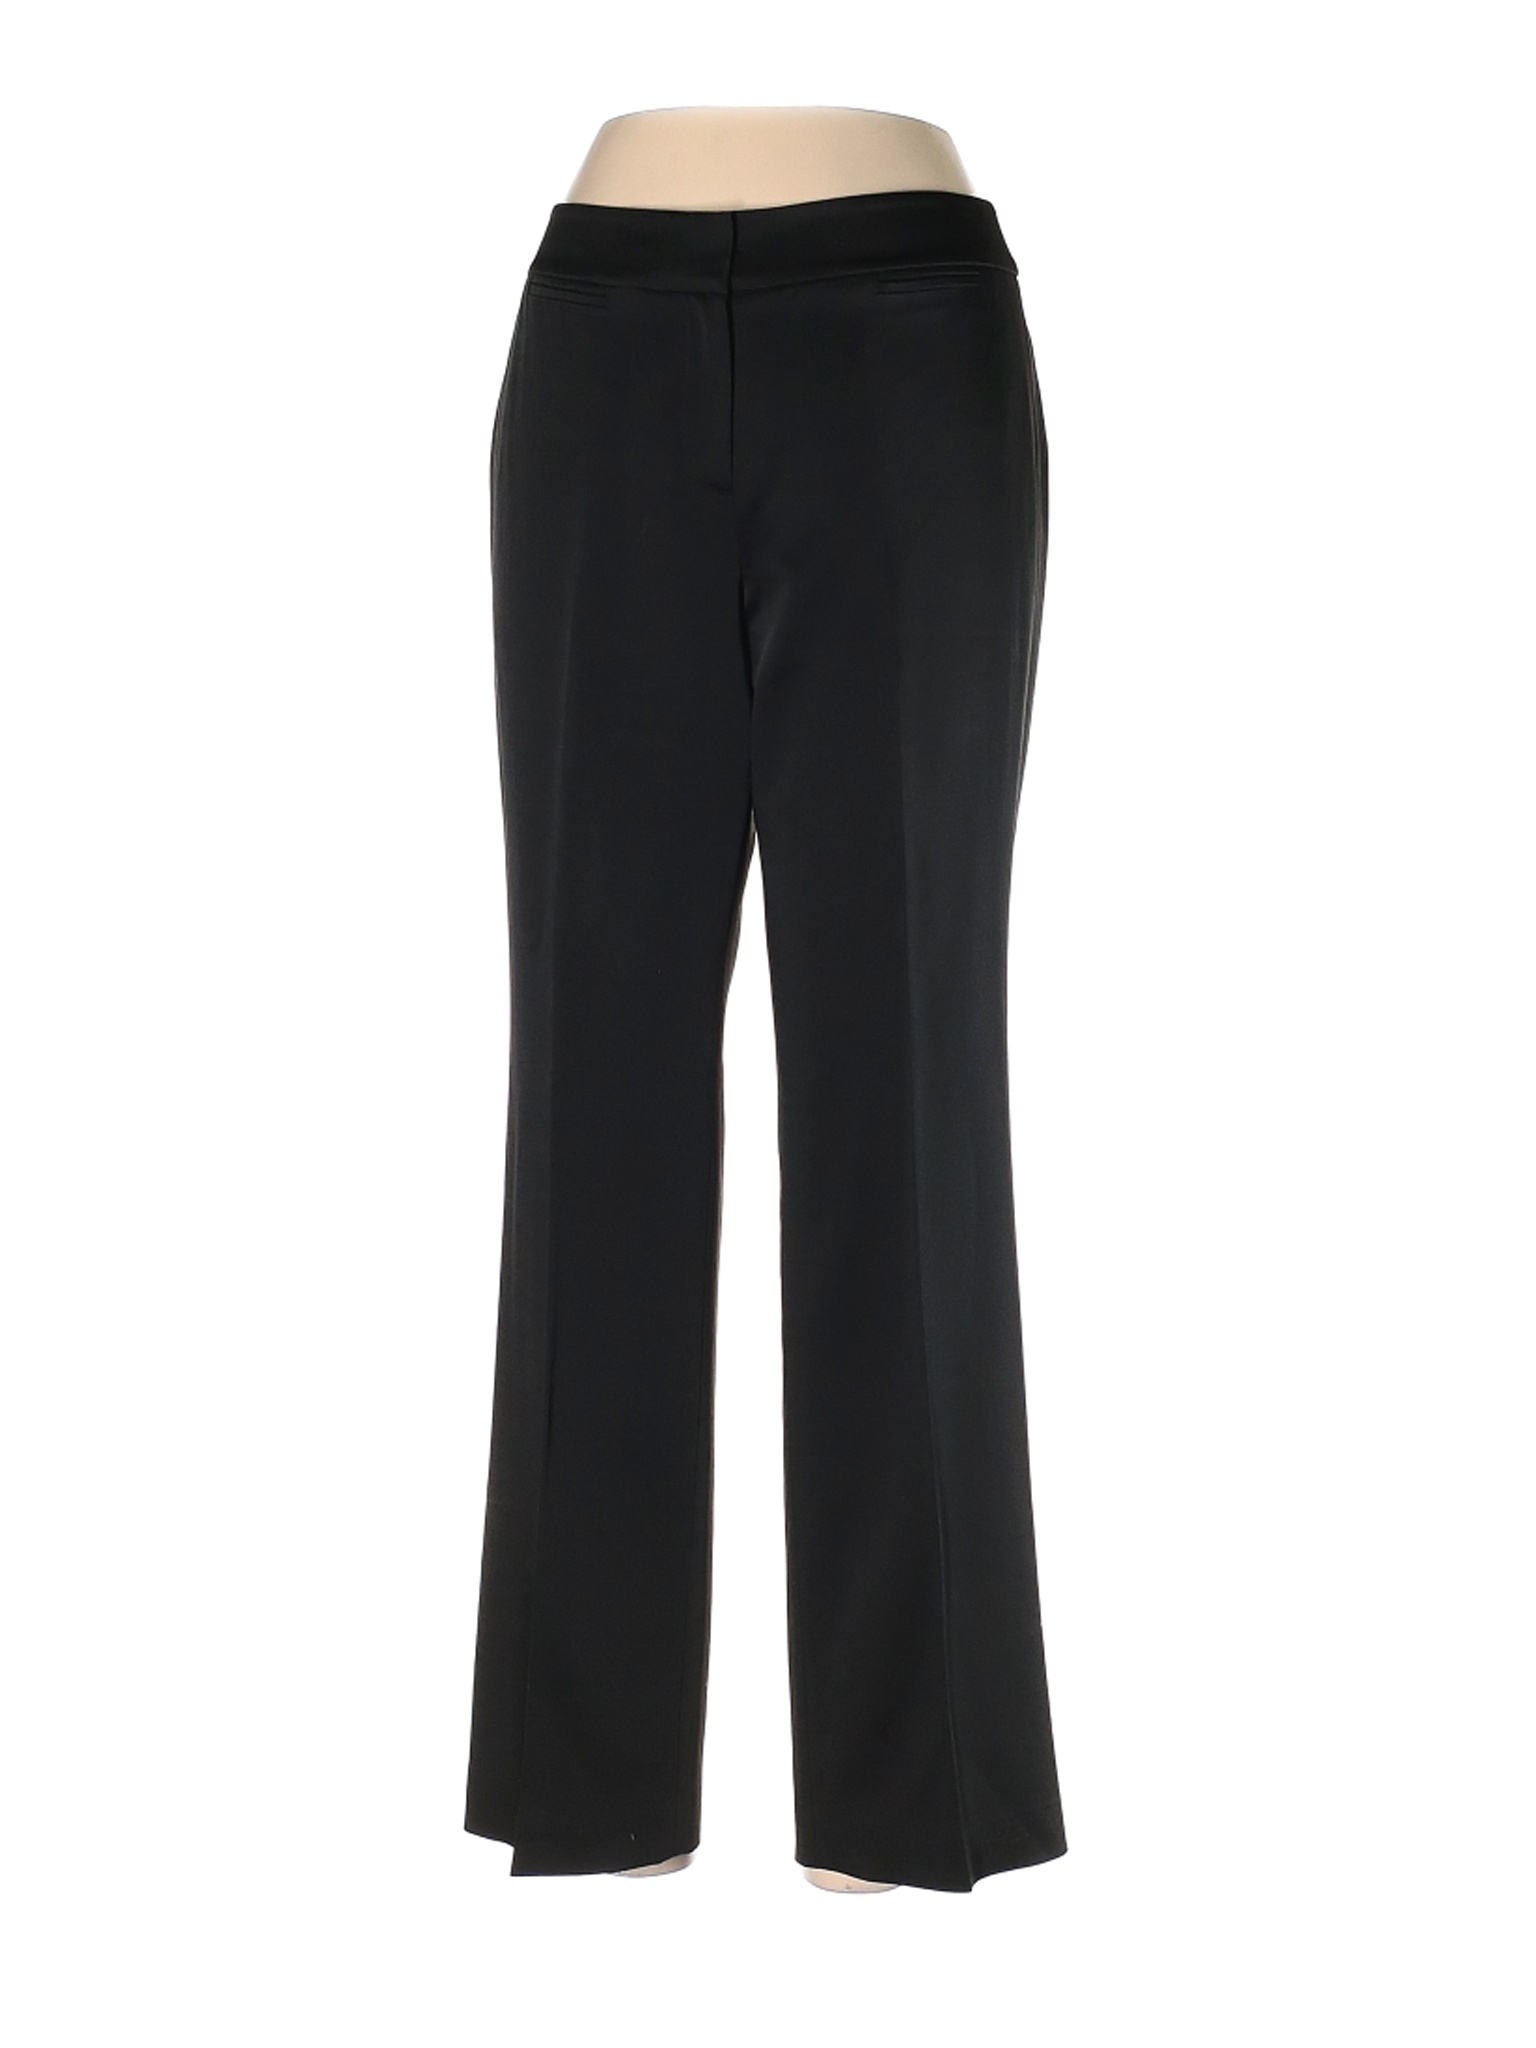 Ann Taylor Women Black Dress Pants 6 Petites | eBay